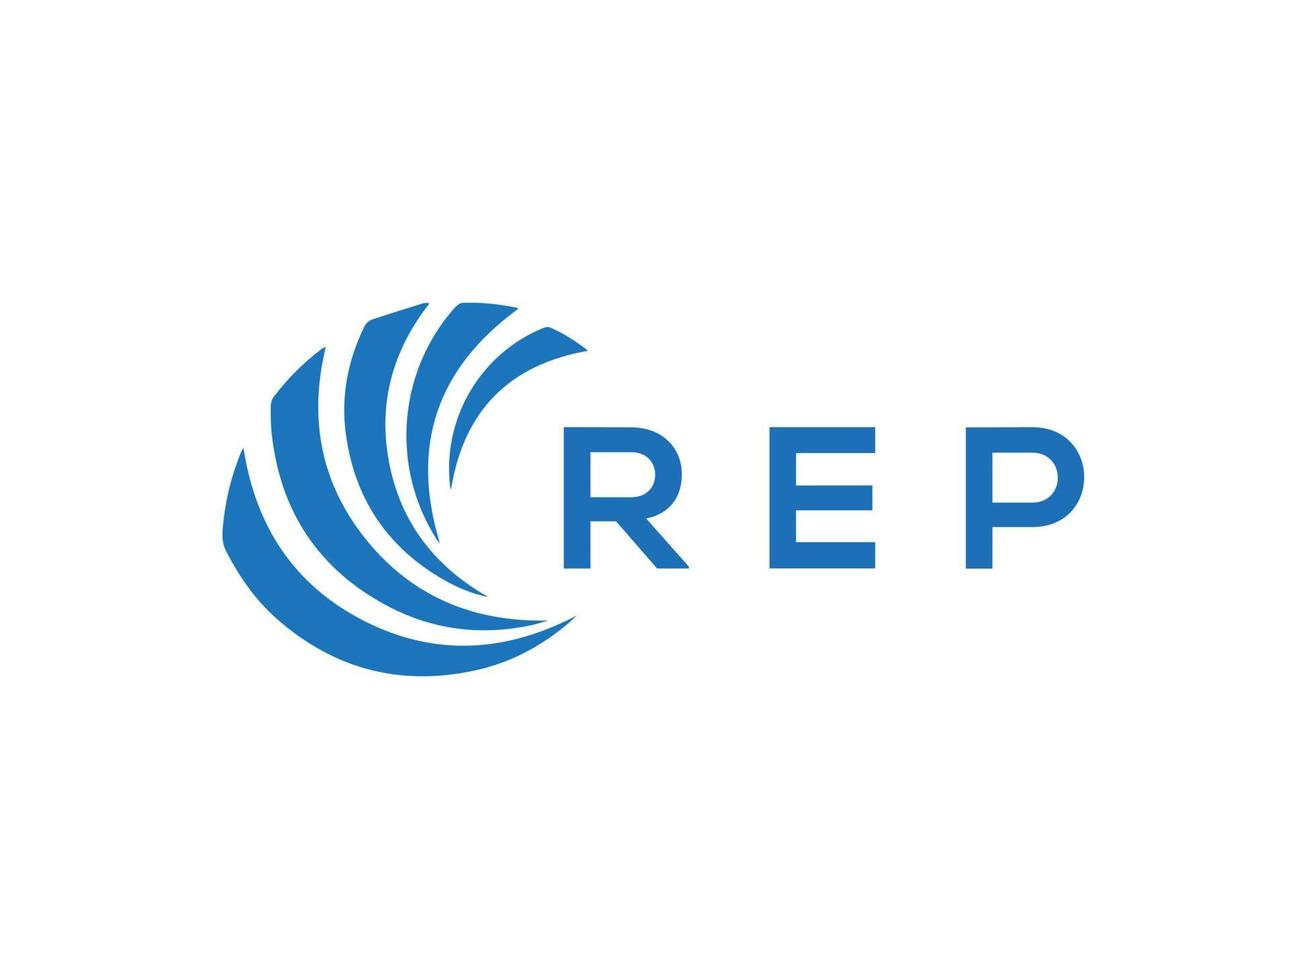 REP letter logo design on white background. REP creative circle letter logo concept. REP letter design. vector